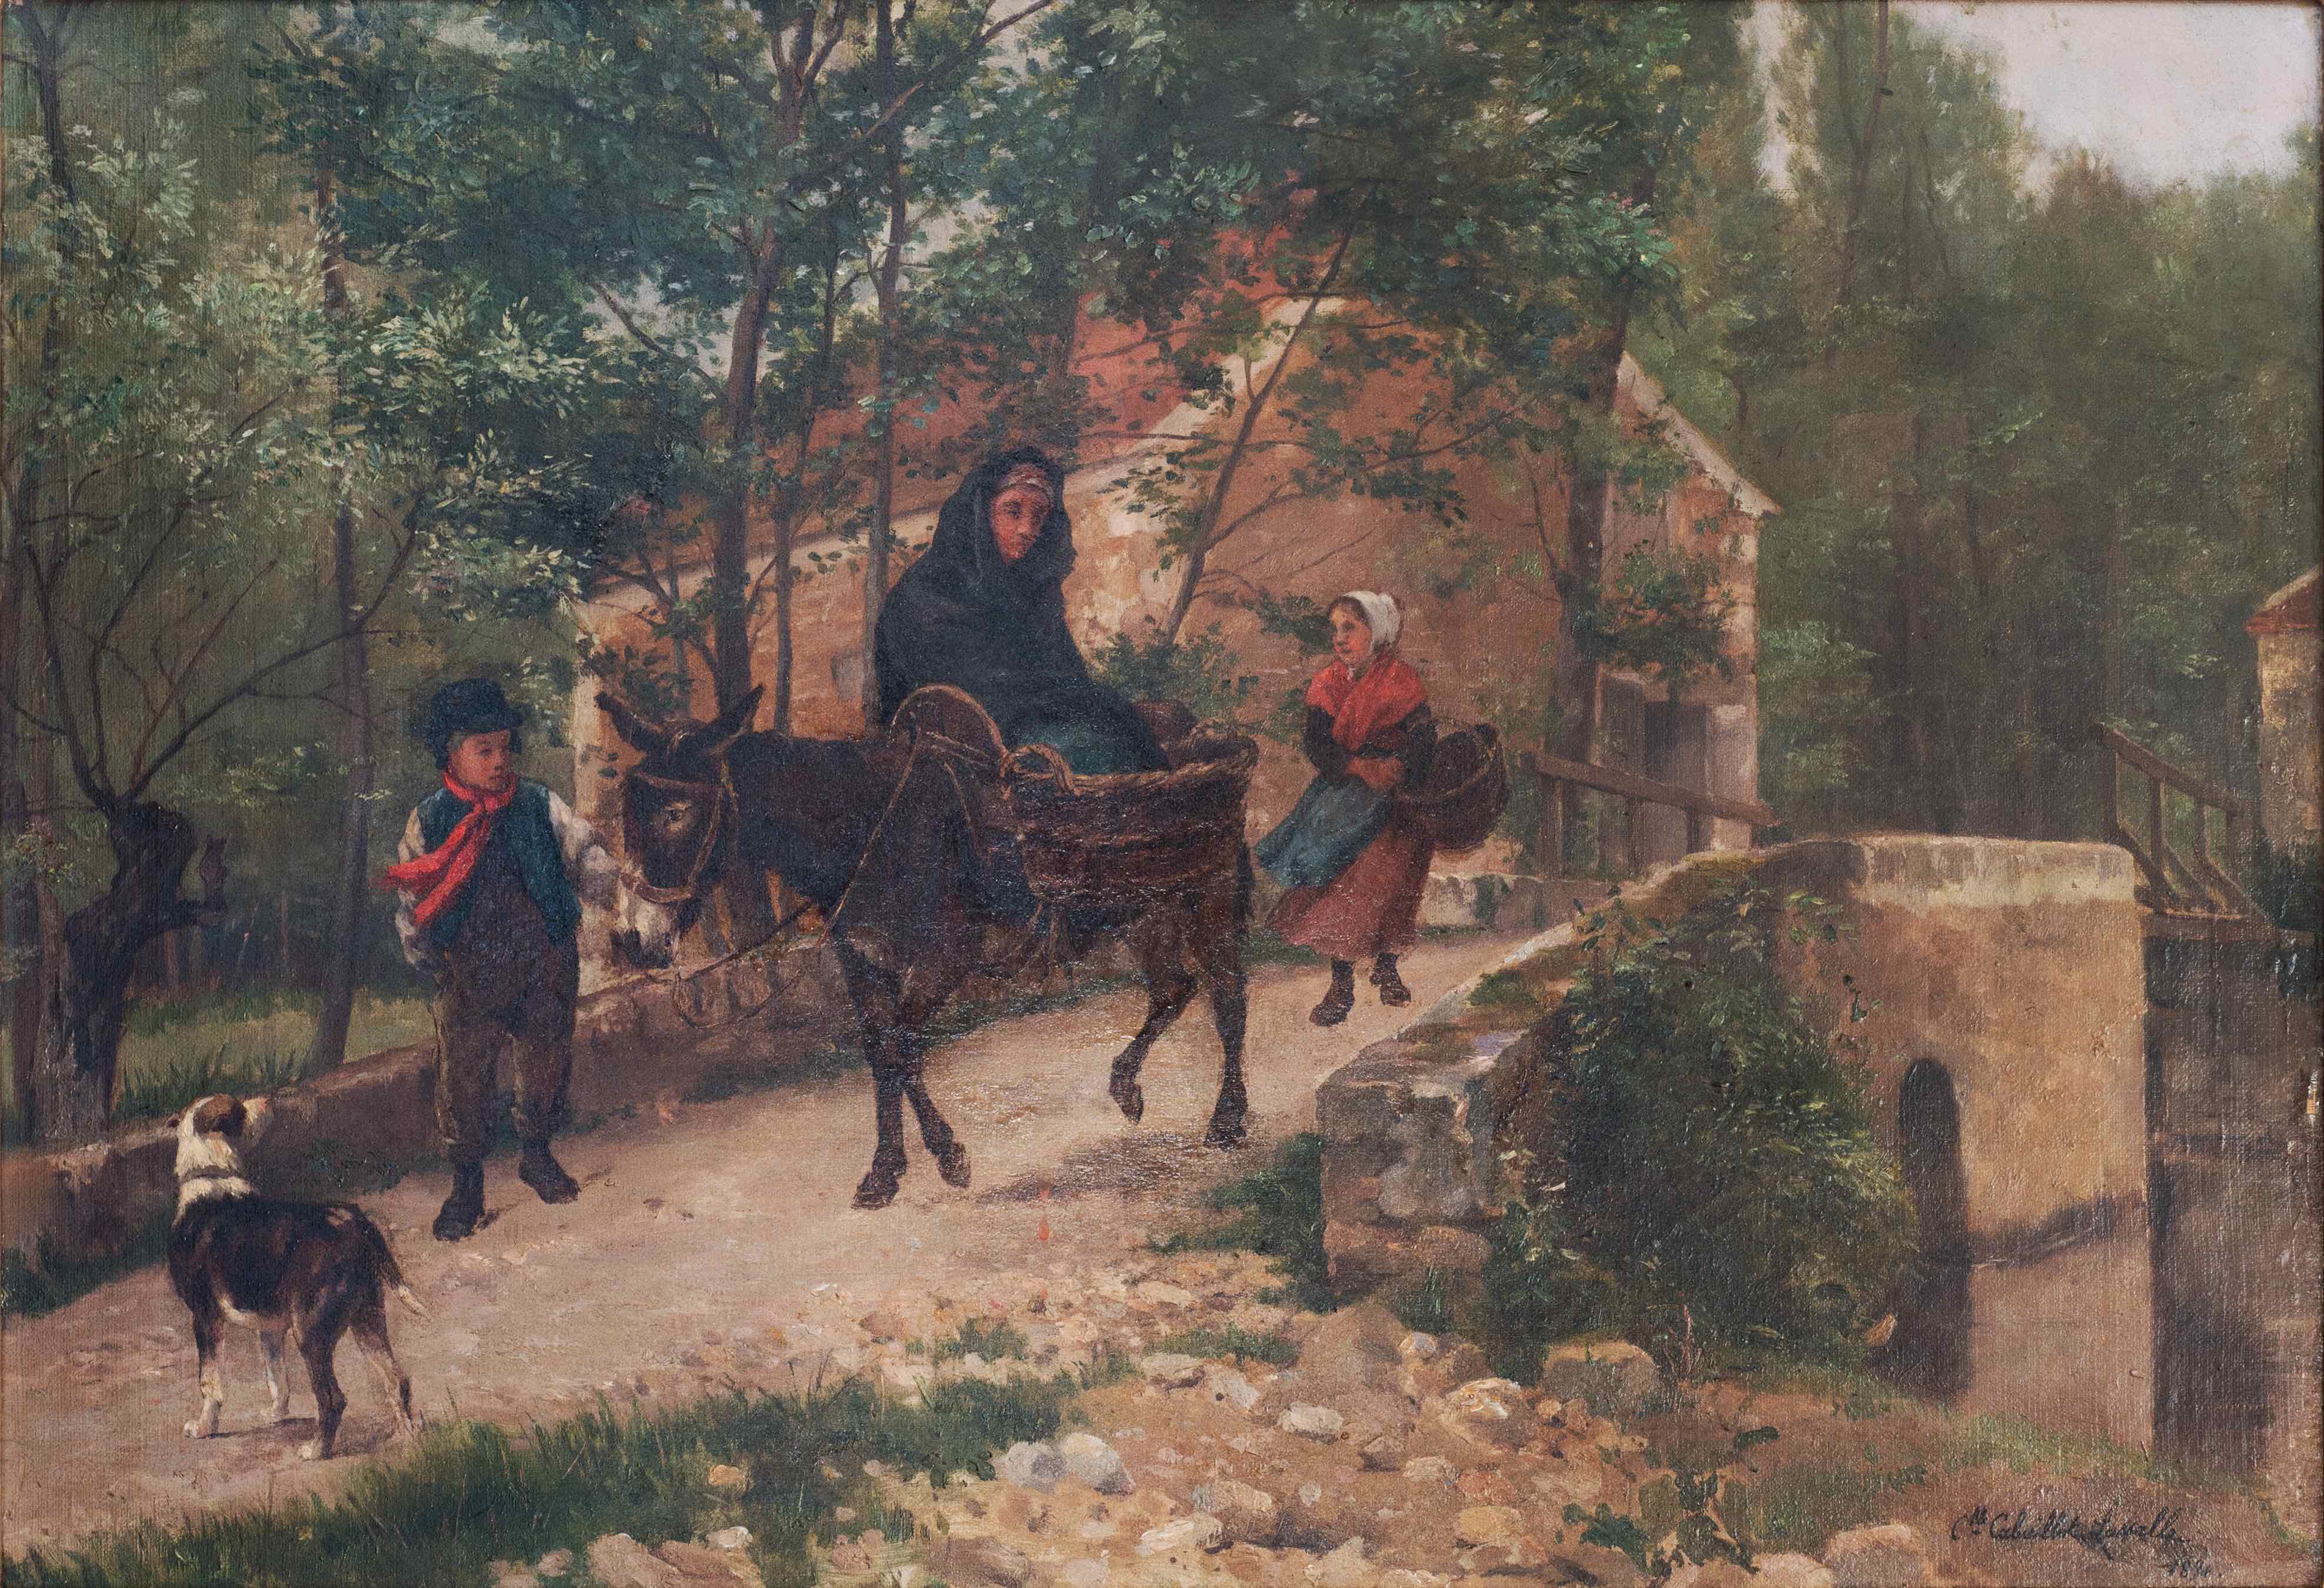 Woman on a donkey, on a bidge